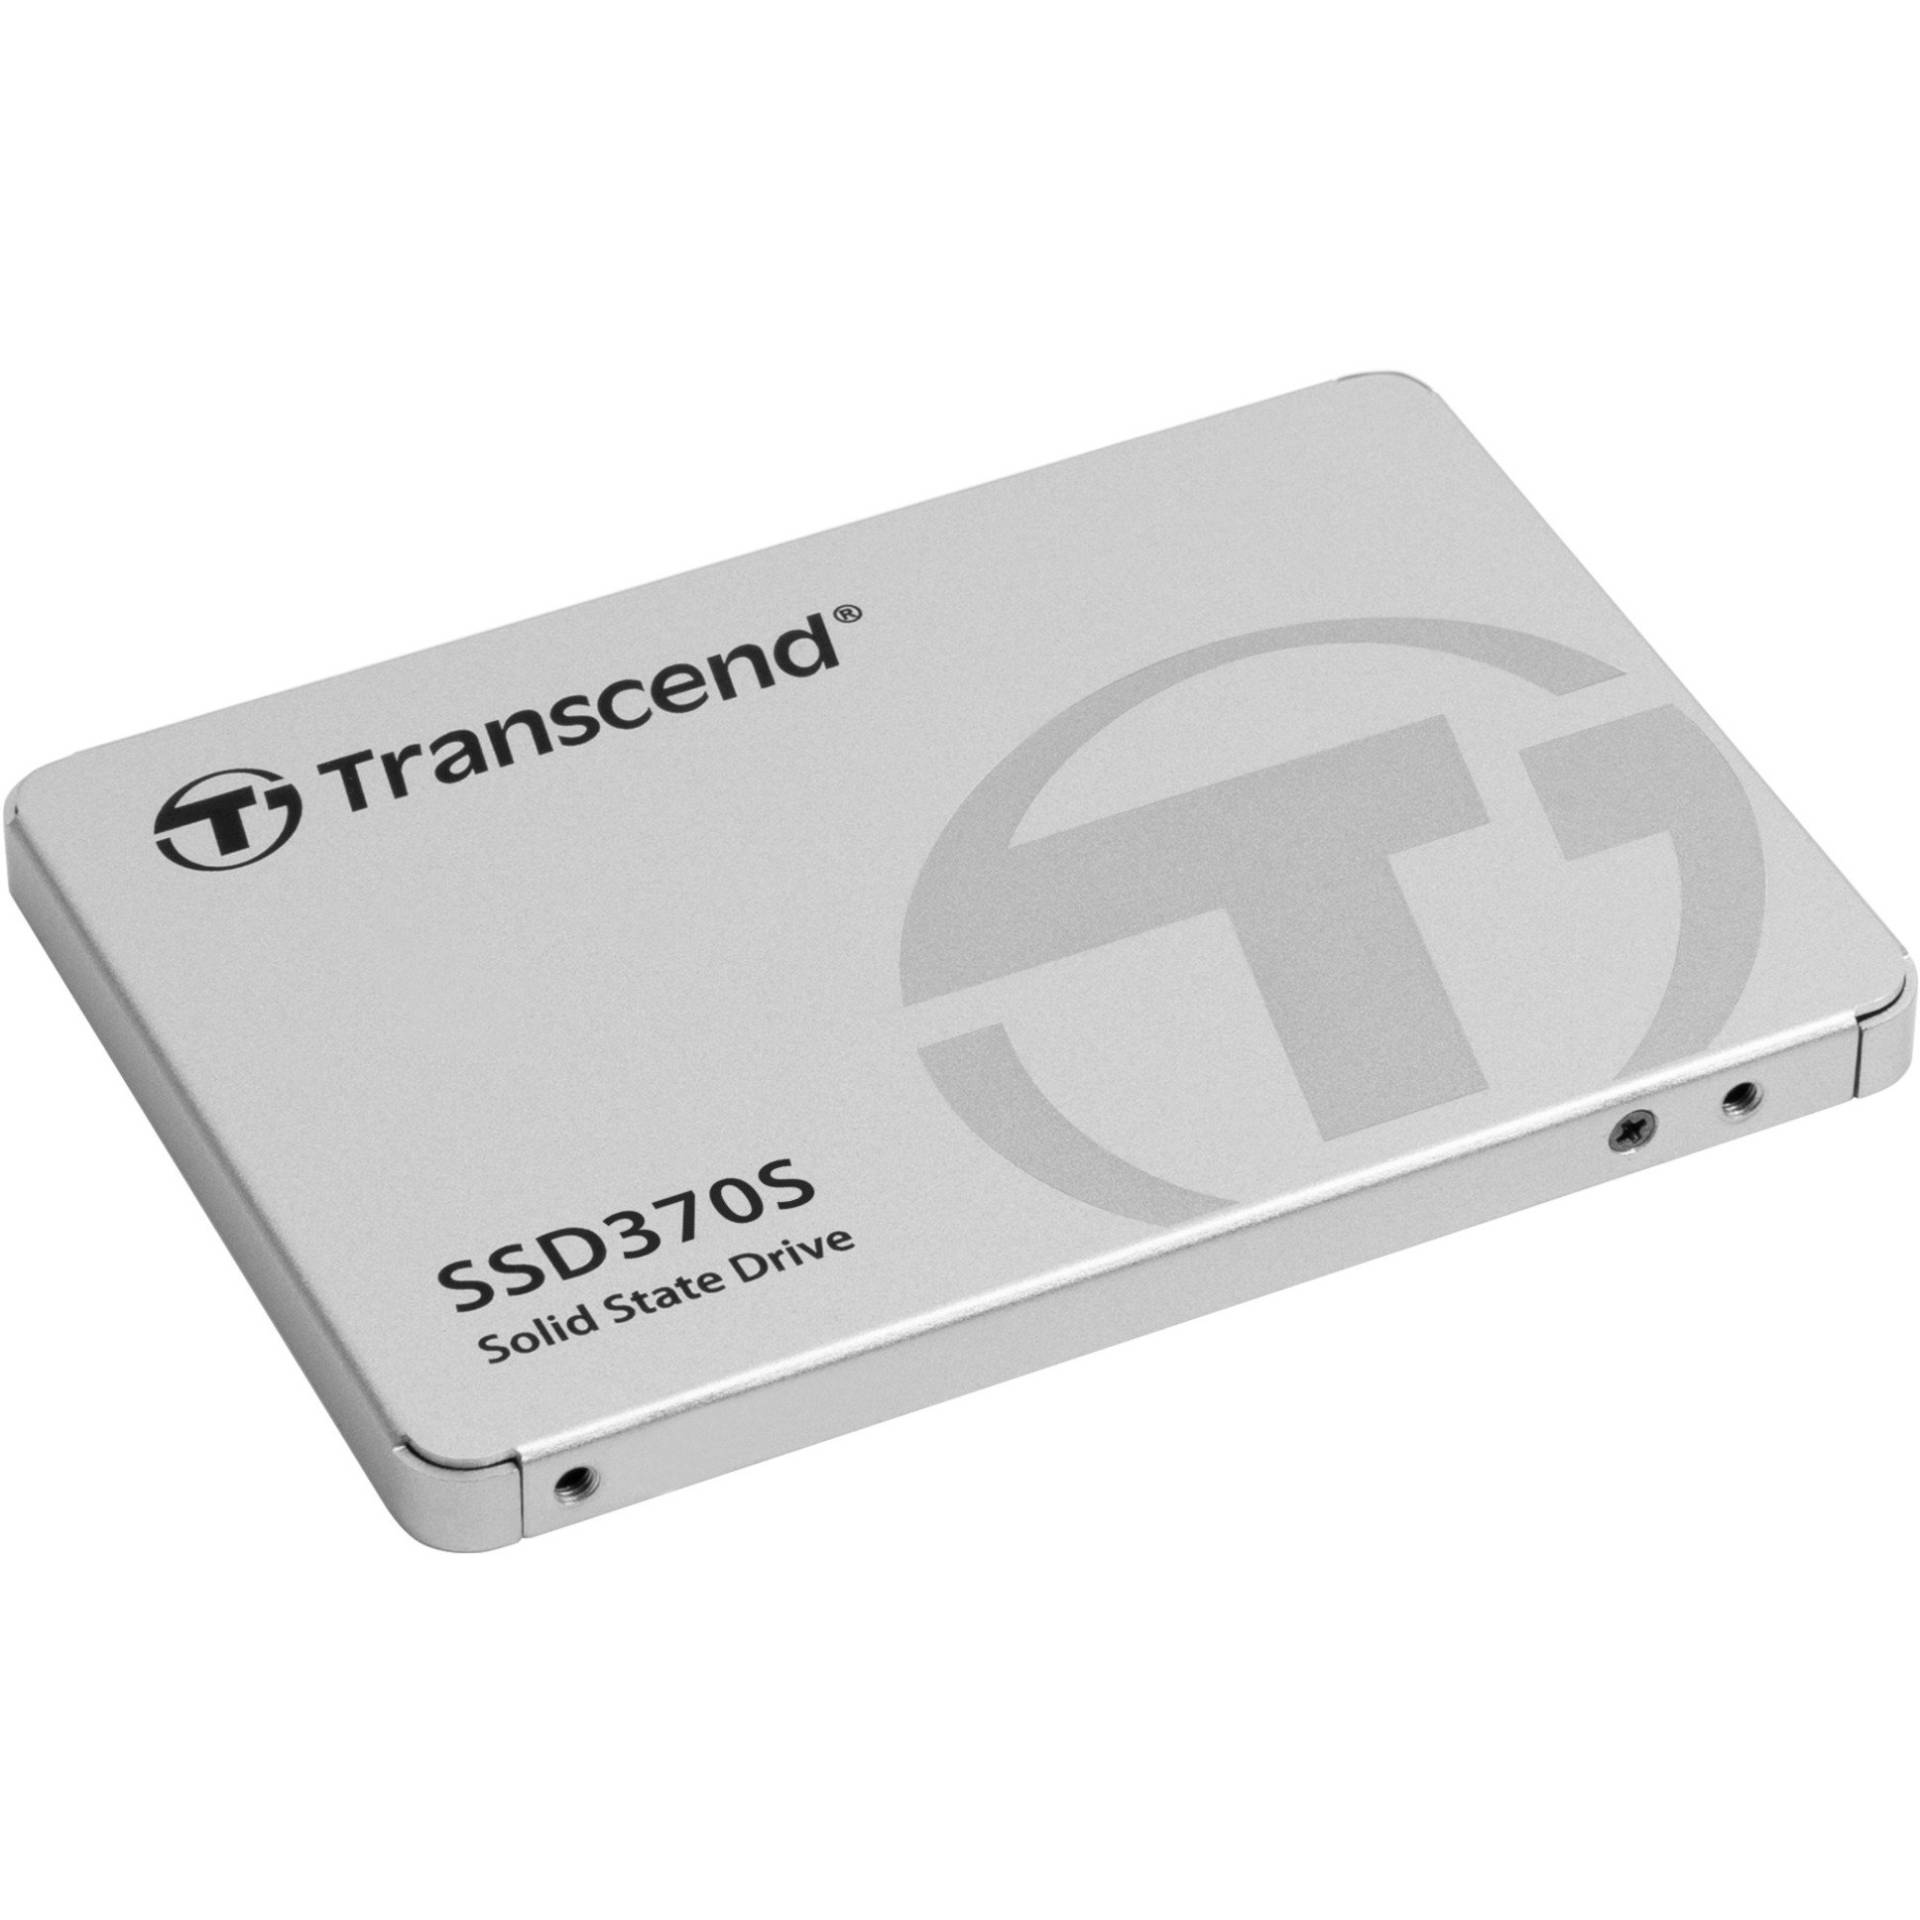 SSD370S 256 GB von Transcend